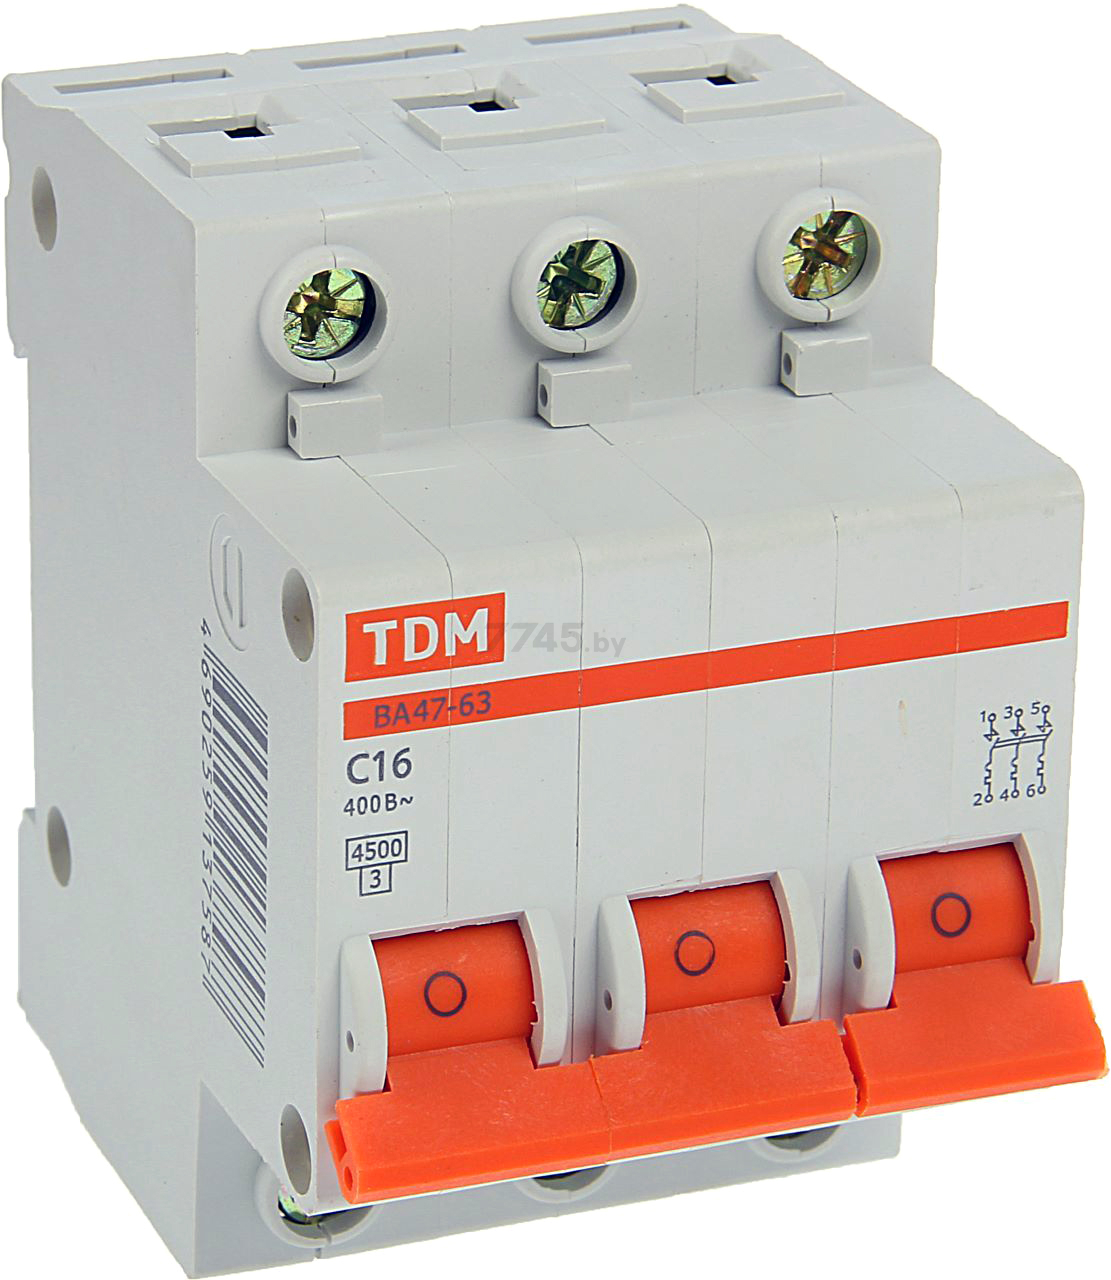 Автоматический выключатель 16а ва 47 63. Автоматический выключатель TDM c25. Автоматический выключатель ТДМ С 25. Автоматический выключатель ТДМ ва58-32. ТДМ автомат 3п.